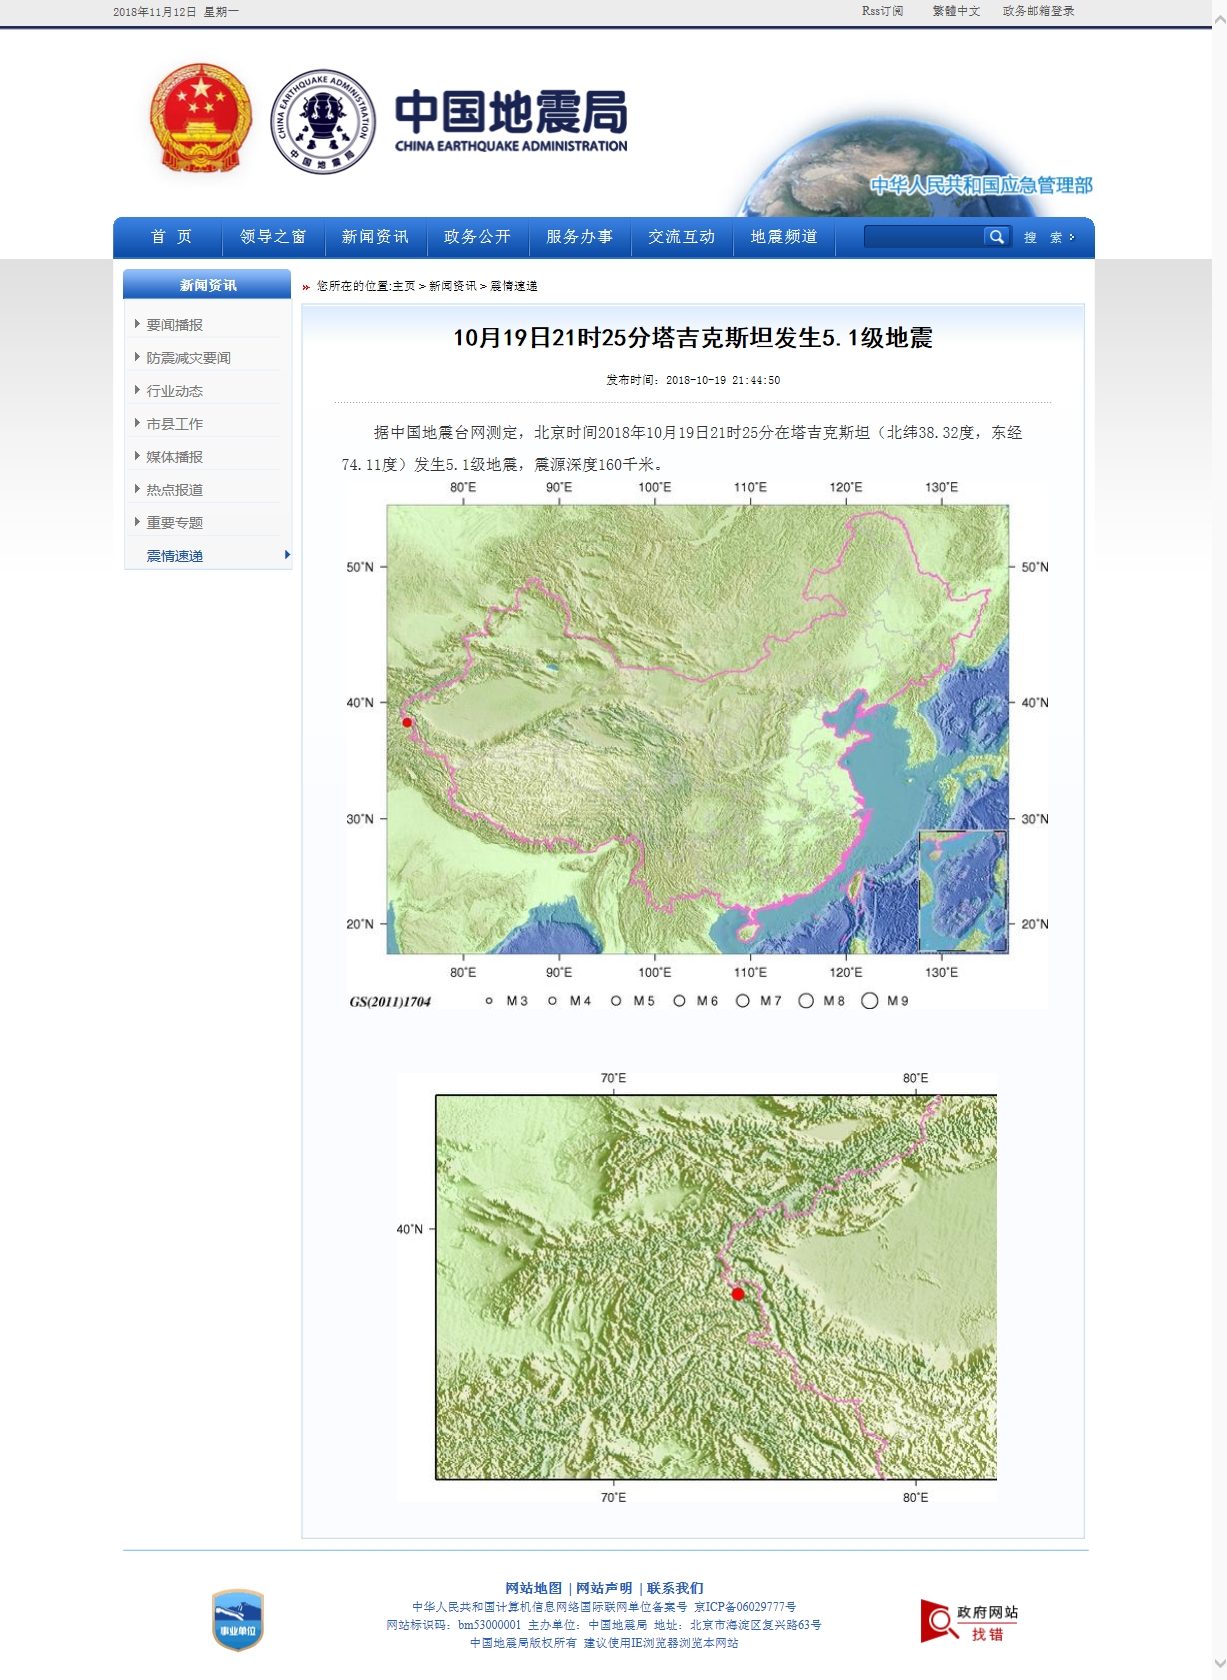 10月19日21时25分塔吉克斯坦发生5.1级地震.jpg